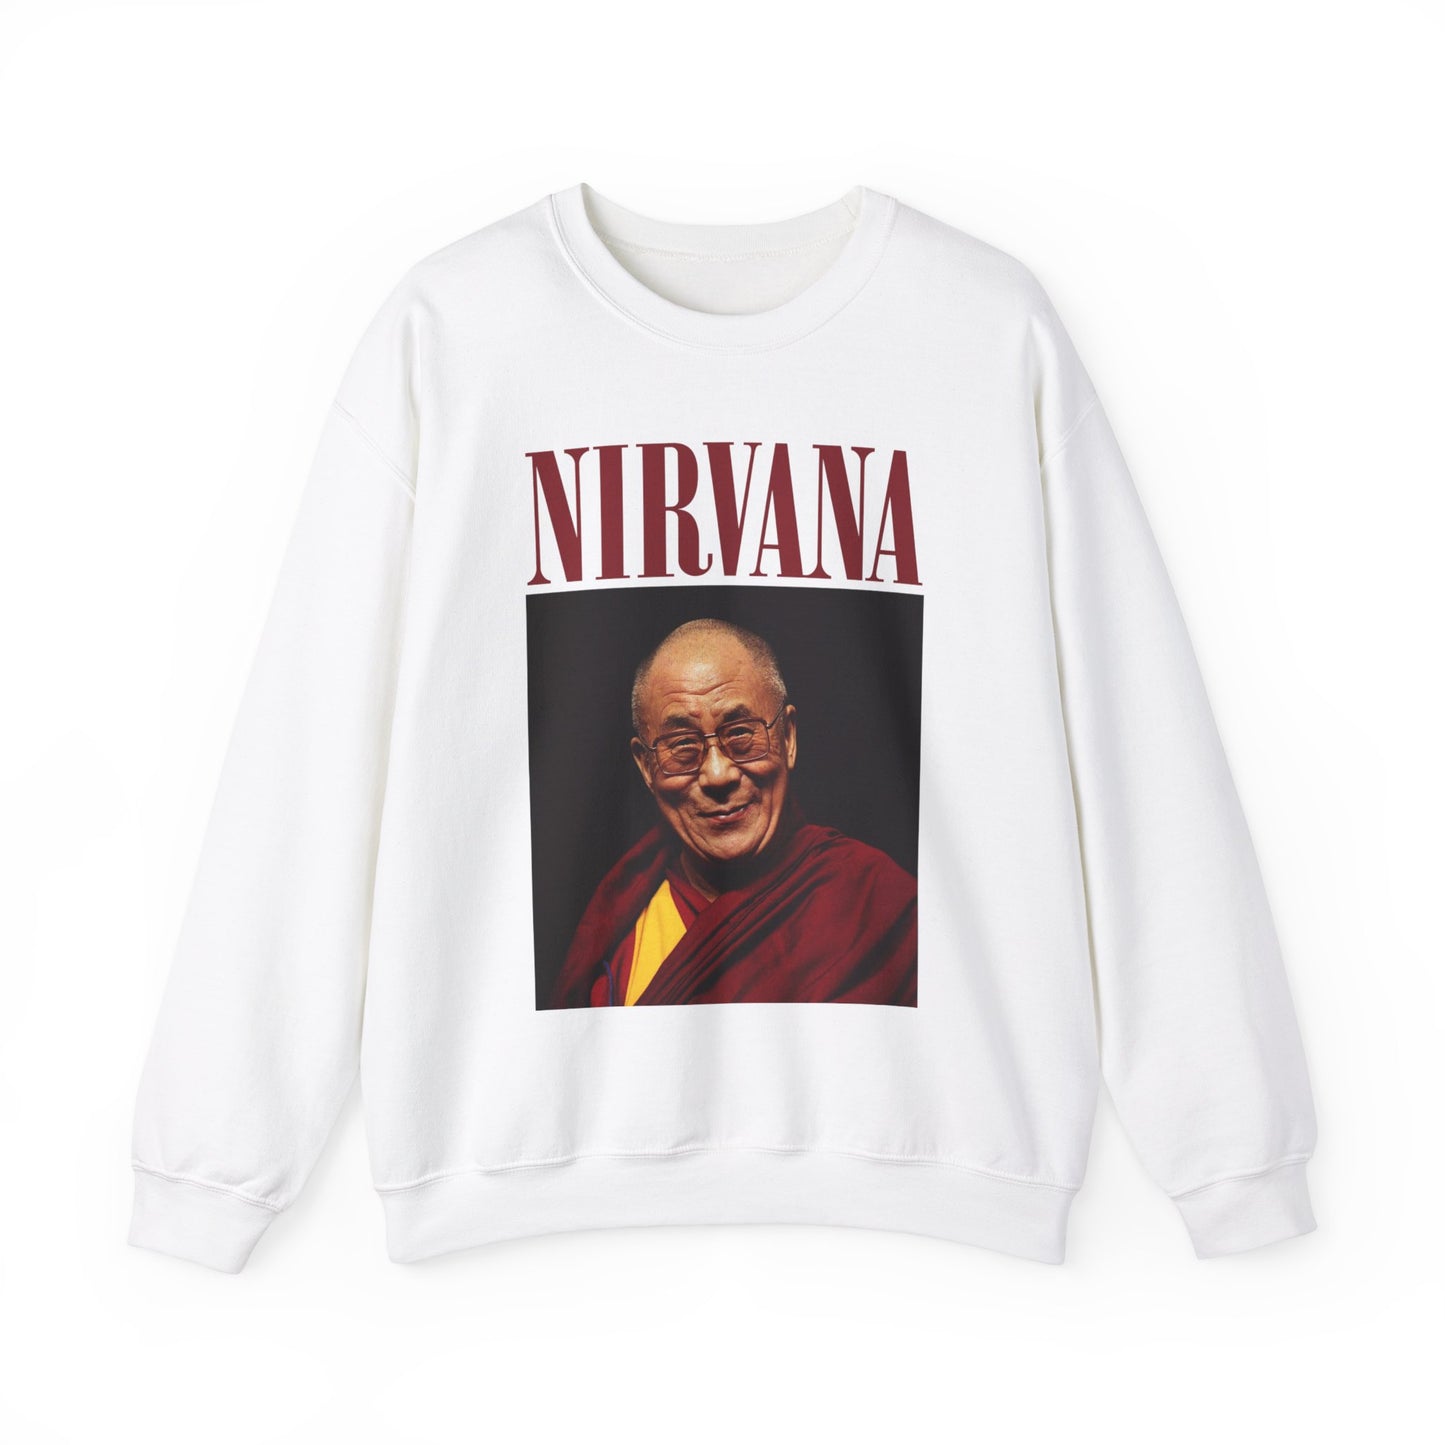 Nirvana - Dalai Lama Unisex Sweatshirt